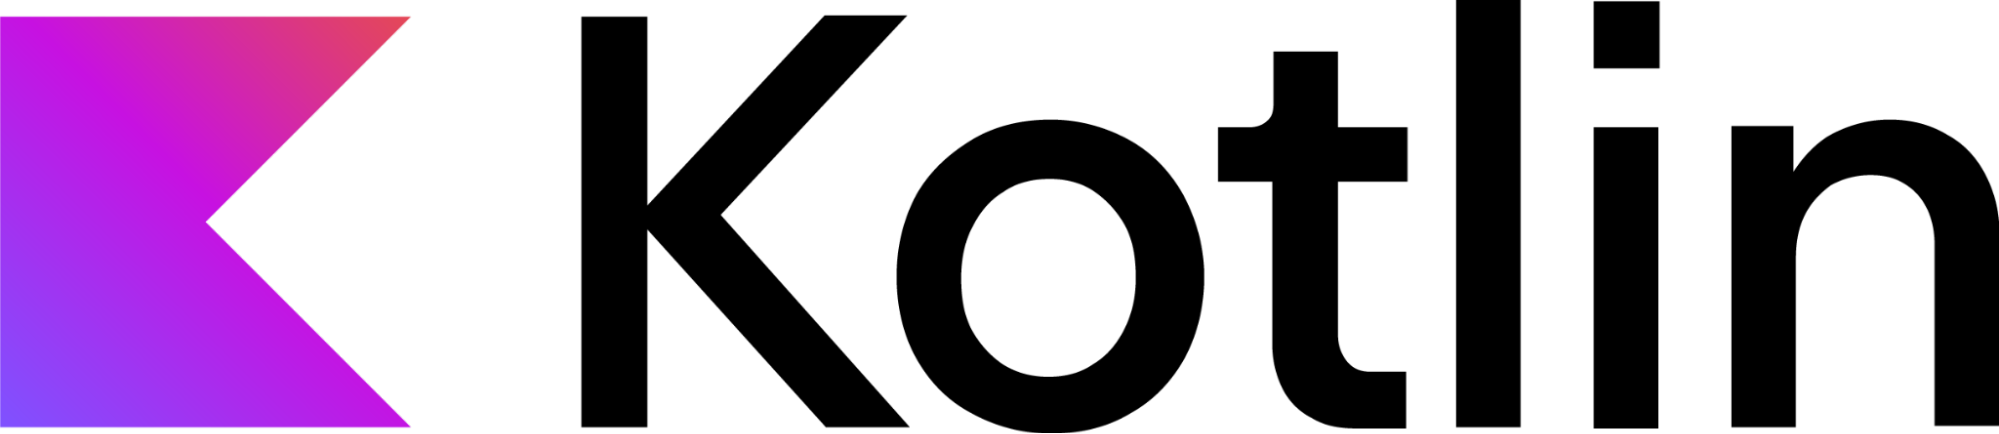 kotlin logo image